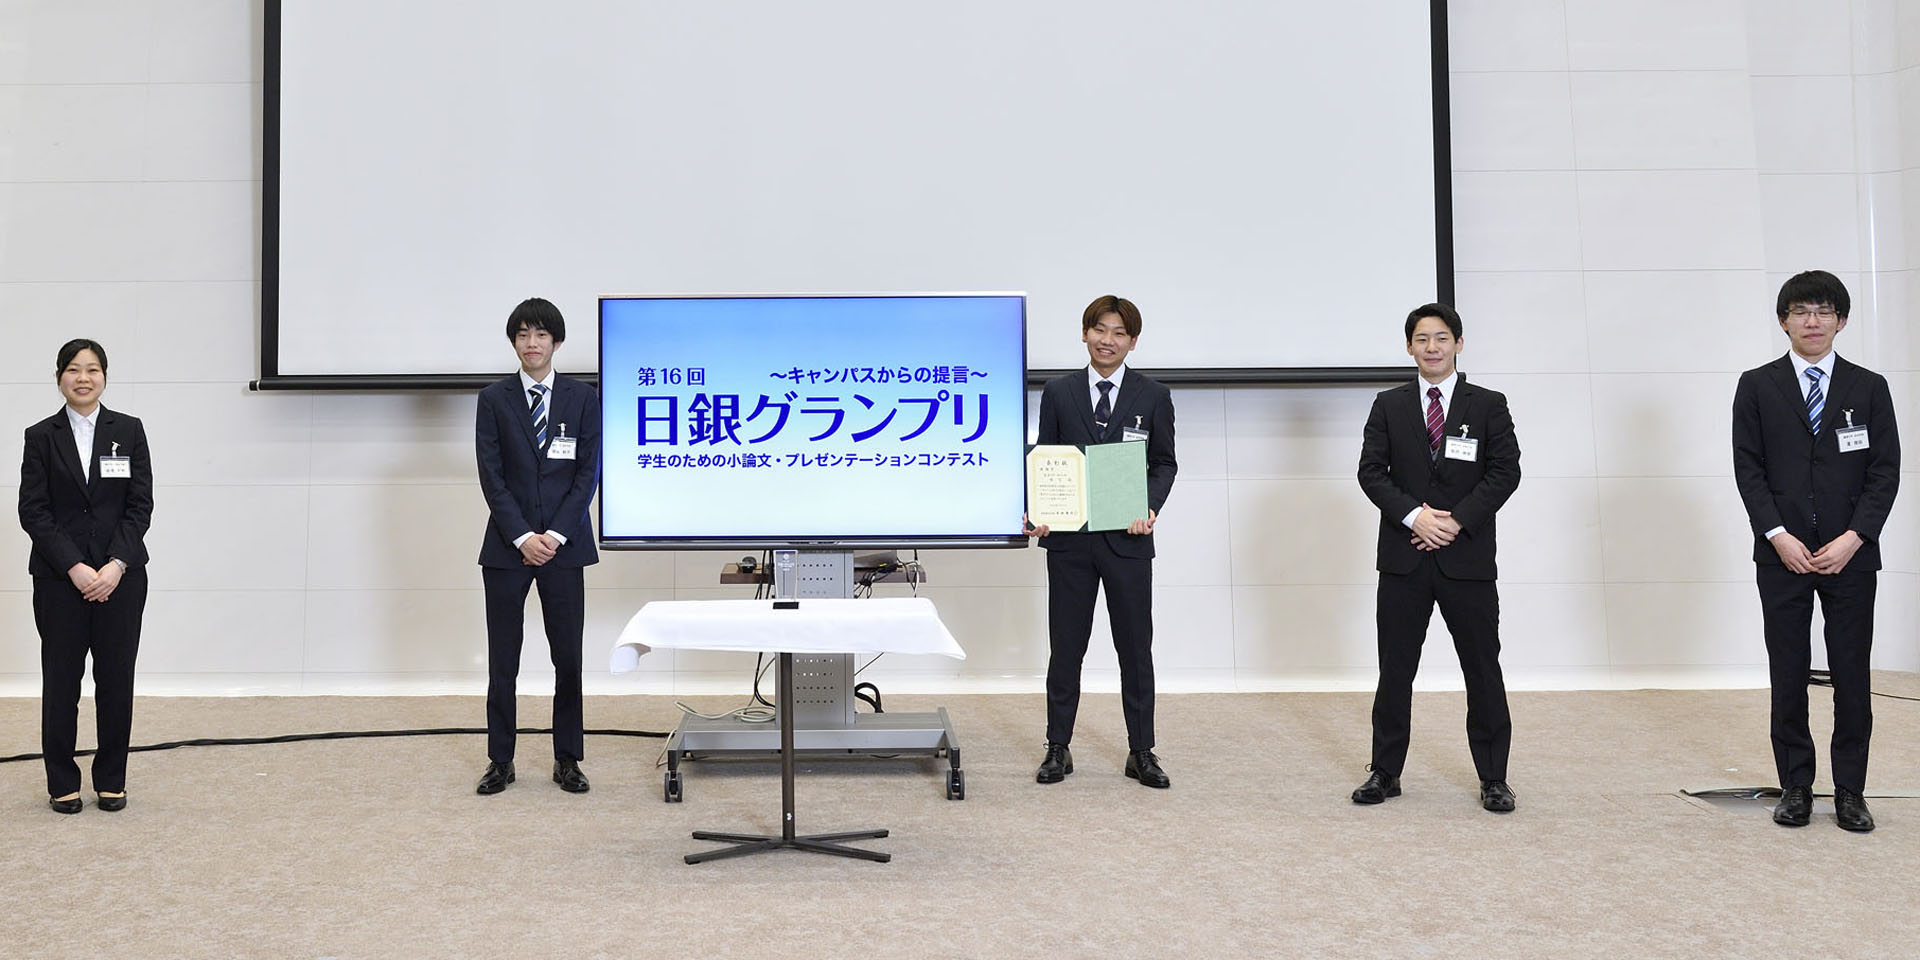 麗澤大学チームの学生5名が、間隔を空けて起立して記念撮影をしている様子